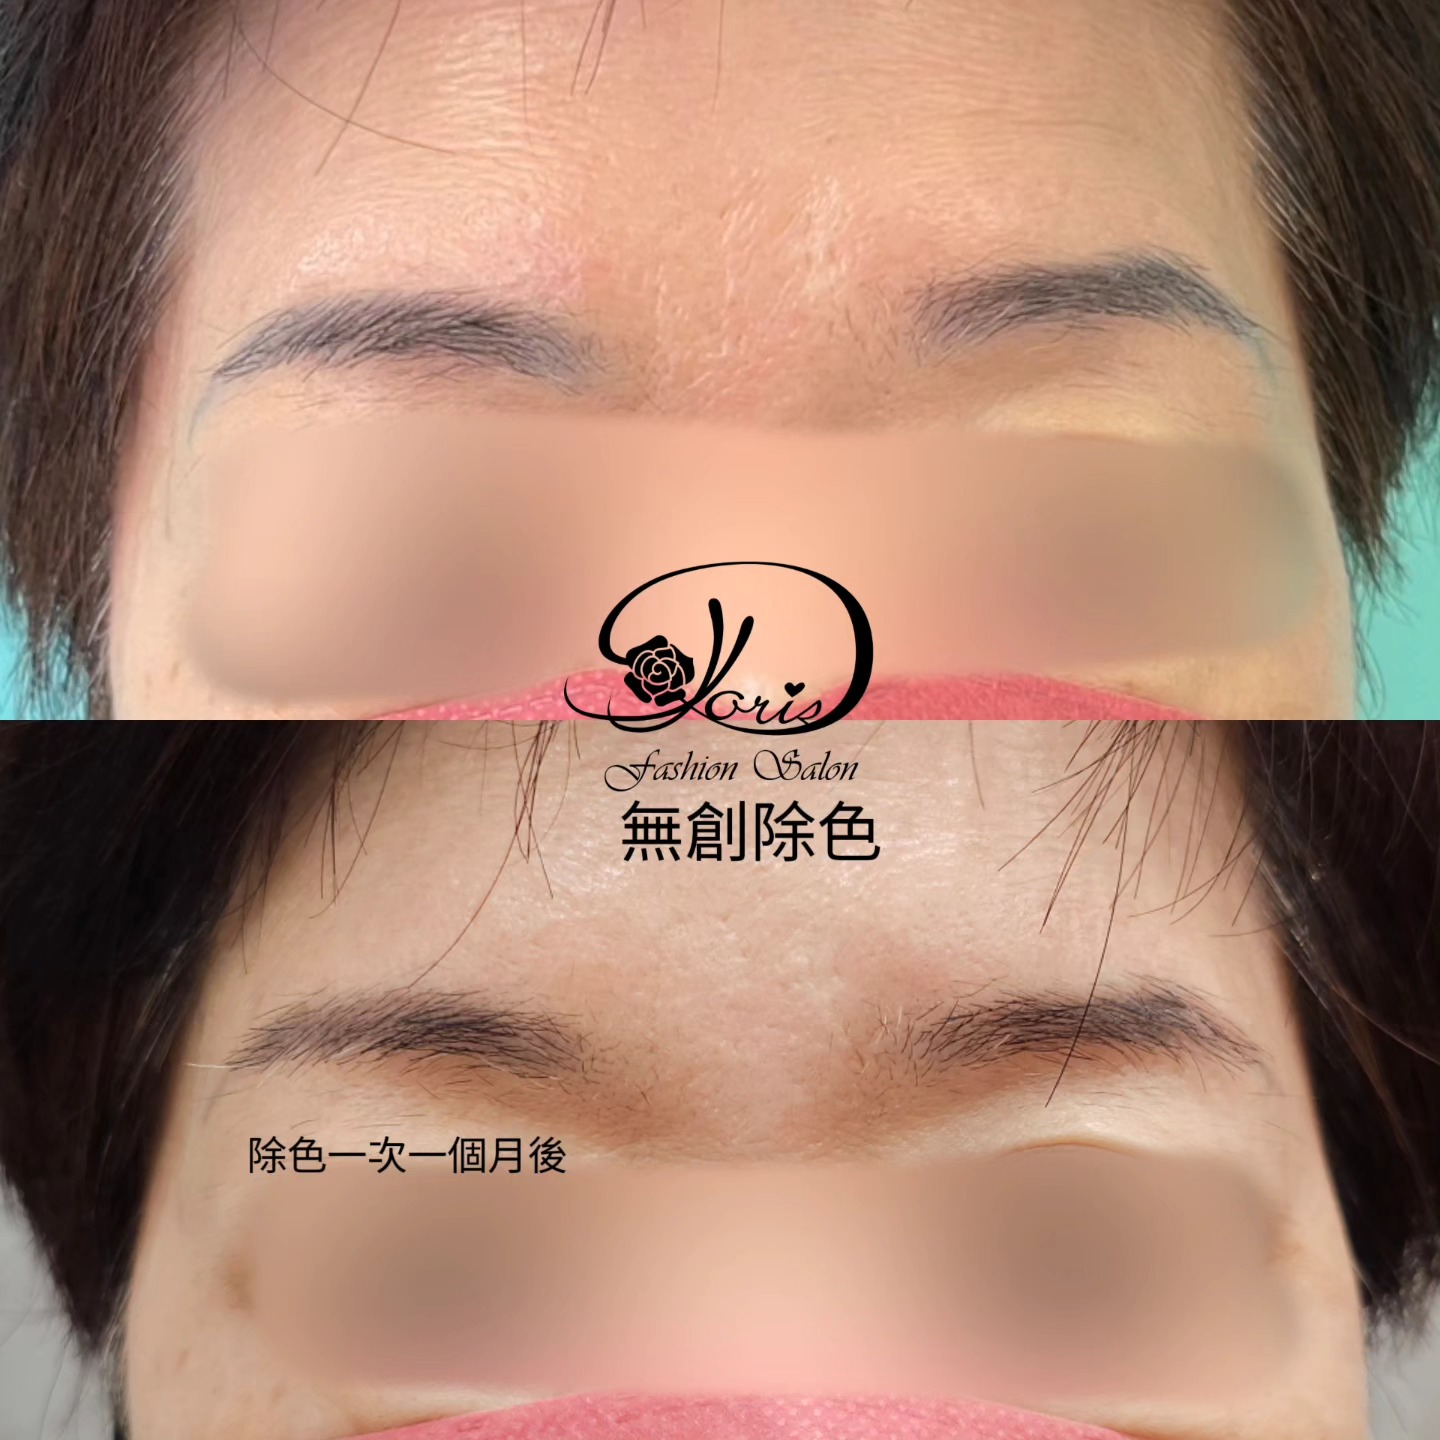 【眉毛除色】現在的除色技術,無傷口正常洗臉化妝 痛感較傳統破皮洗眉低很多